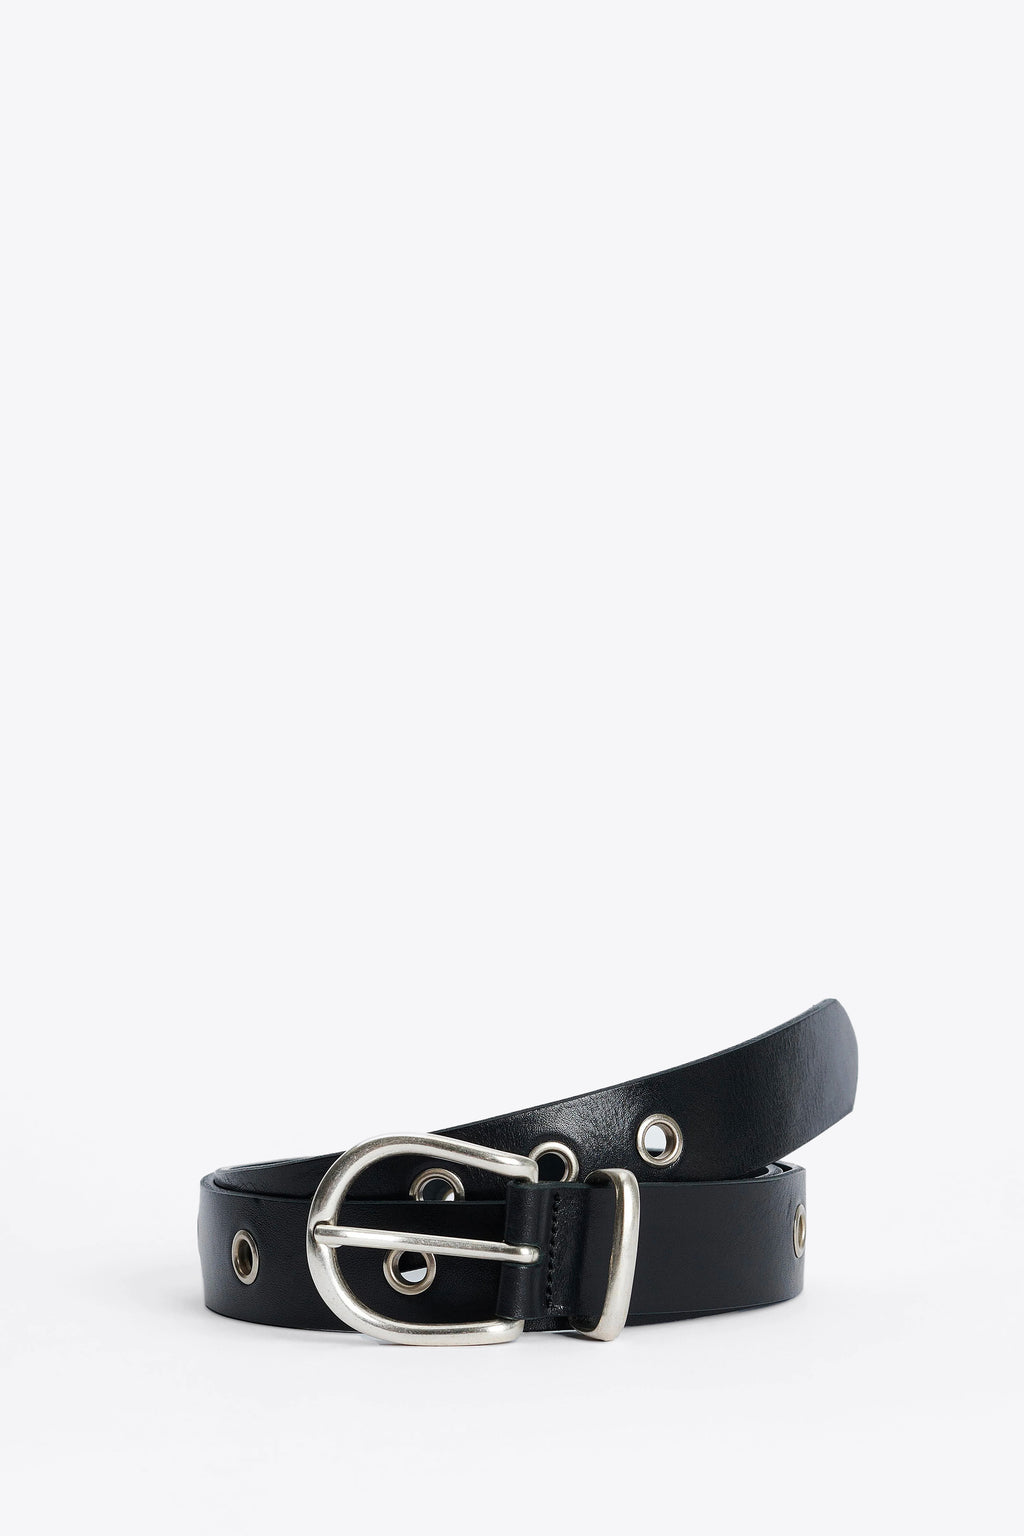 alt-image__Black-leather-belts-with-metal-eyelets---Eyelet-Belt-3cm-